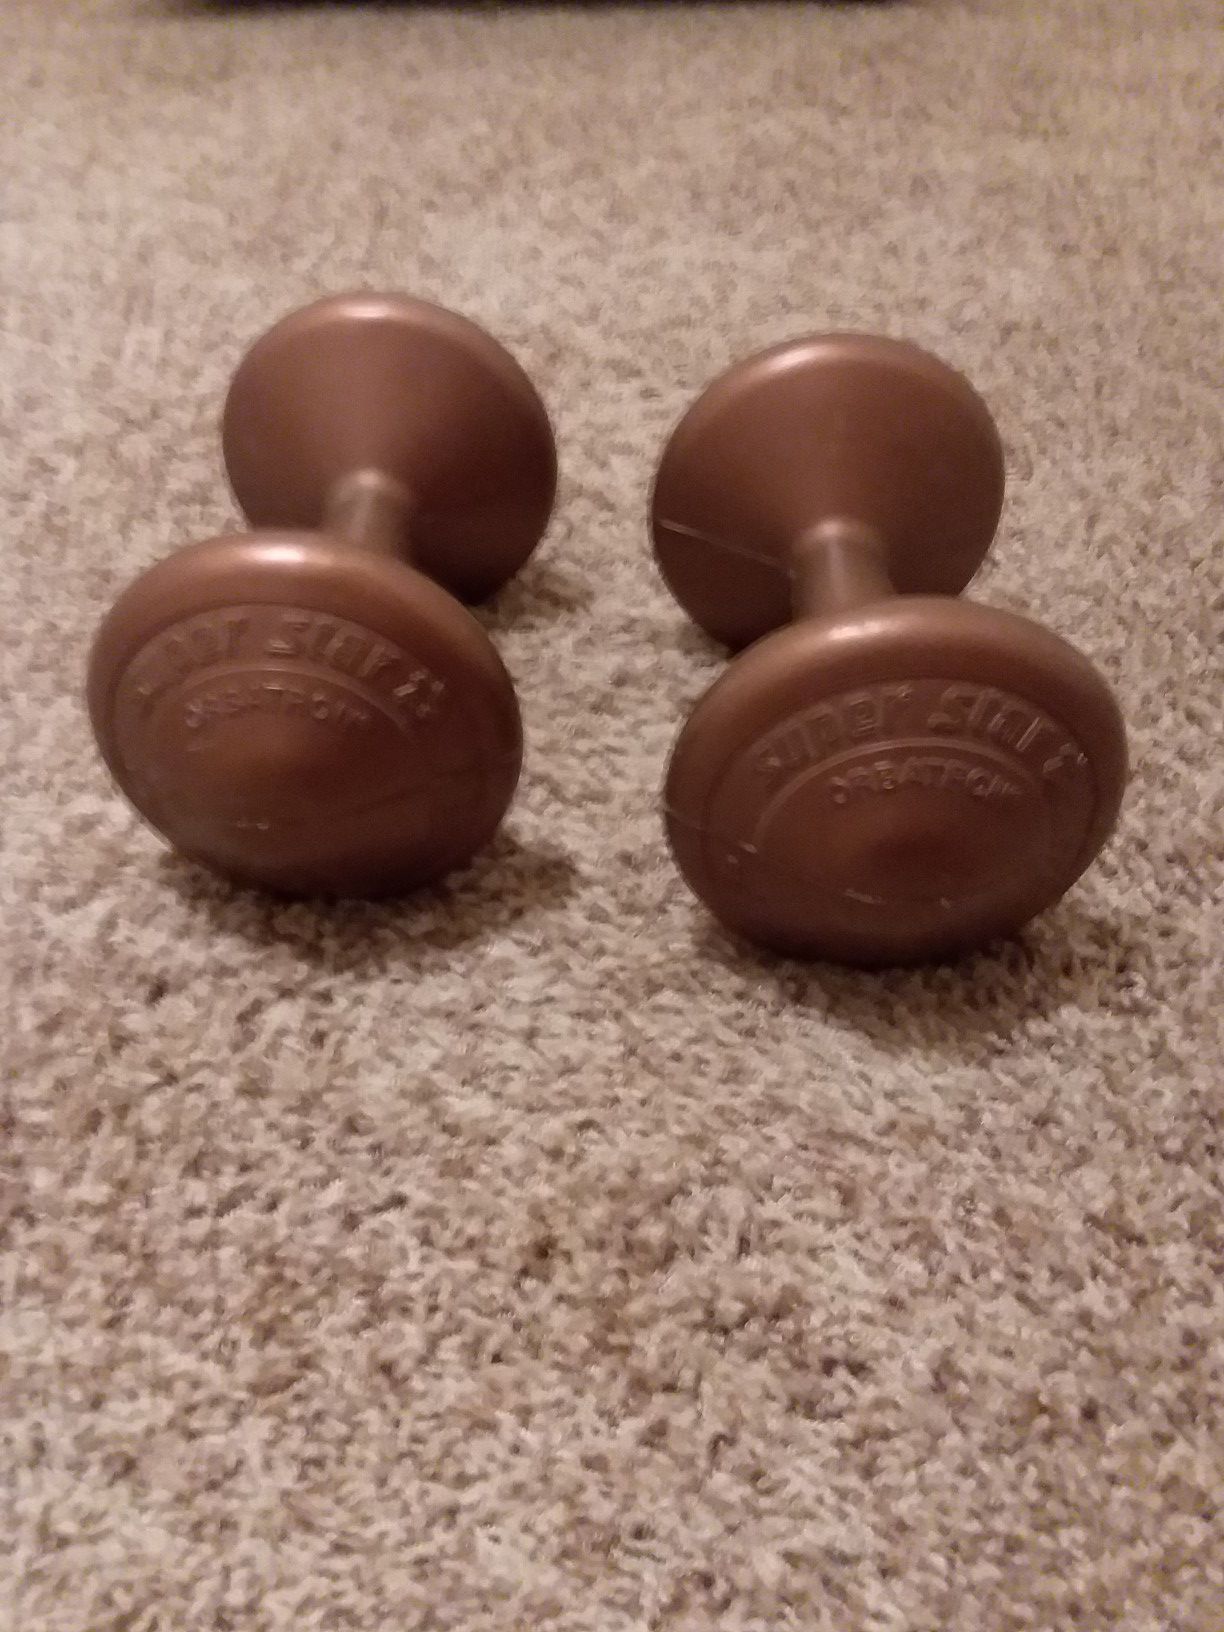 6.6 Lb weights / dumbells